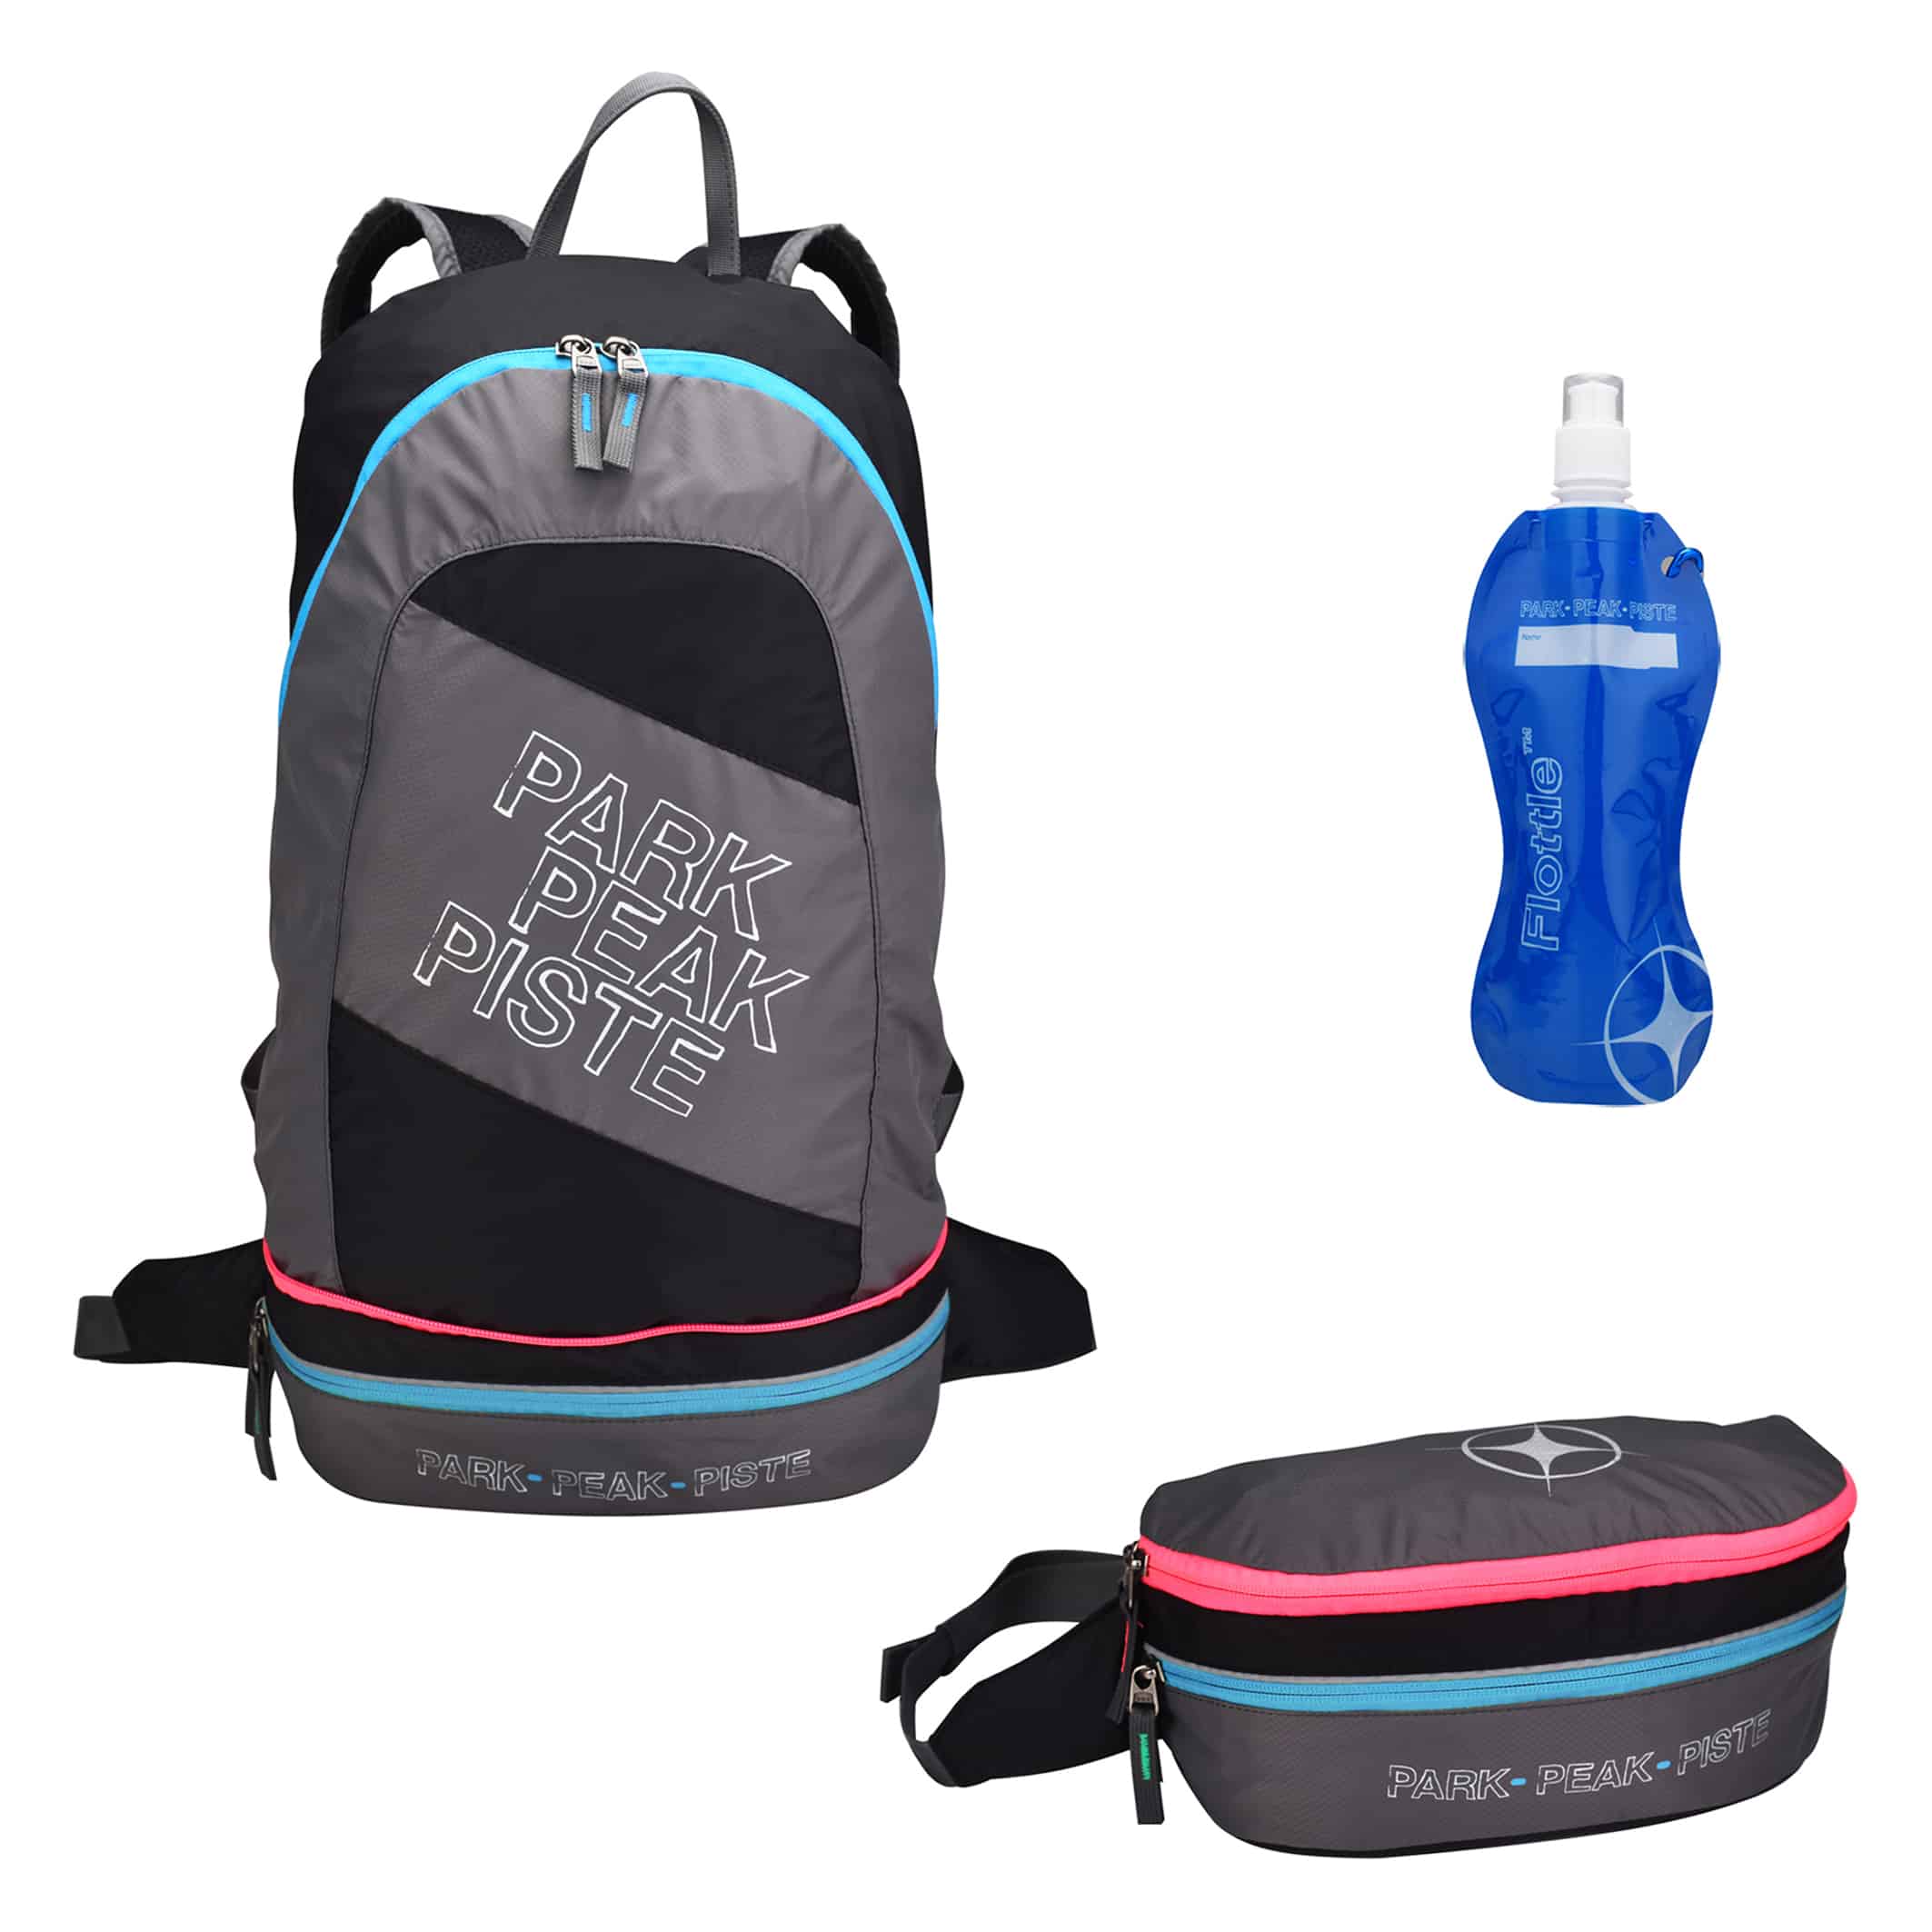 MB550-05-Backpack-2-in-1-Rock-Blue-Pink+Flottle